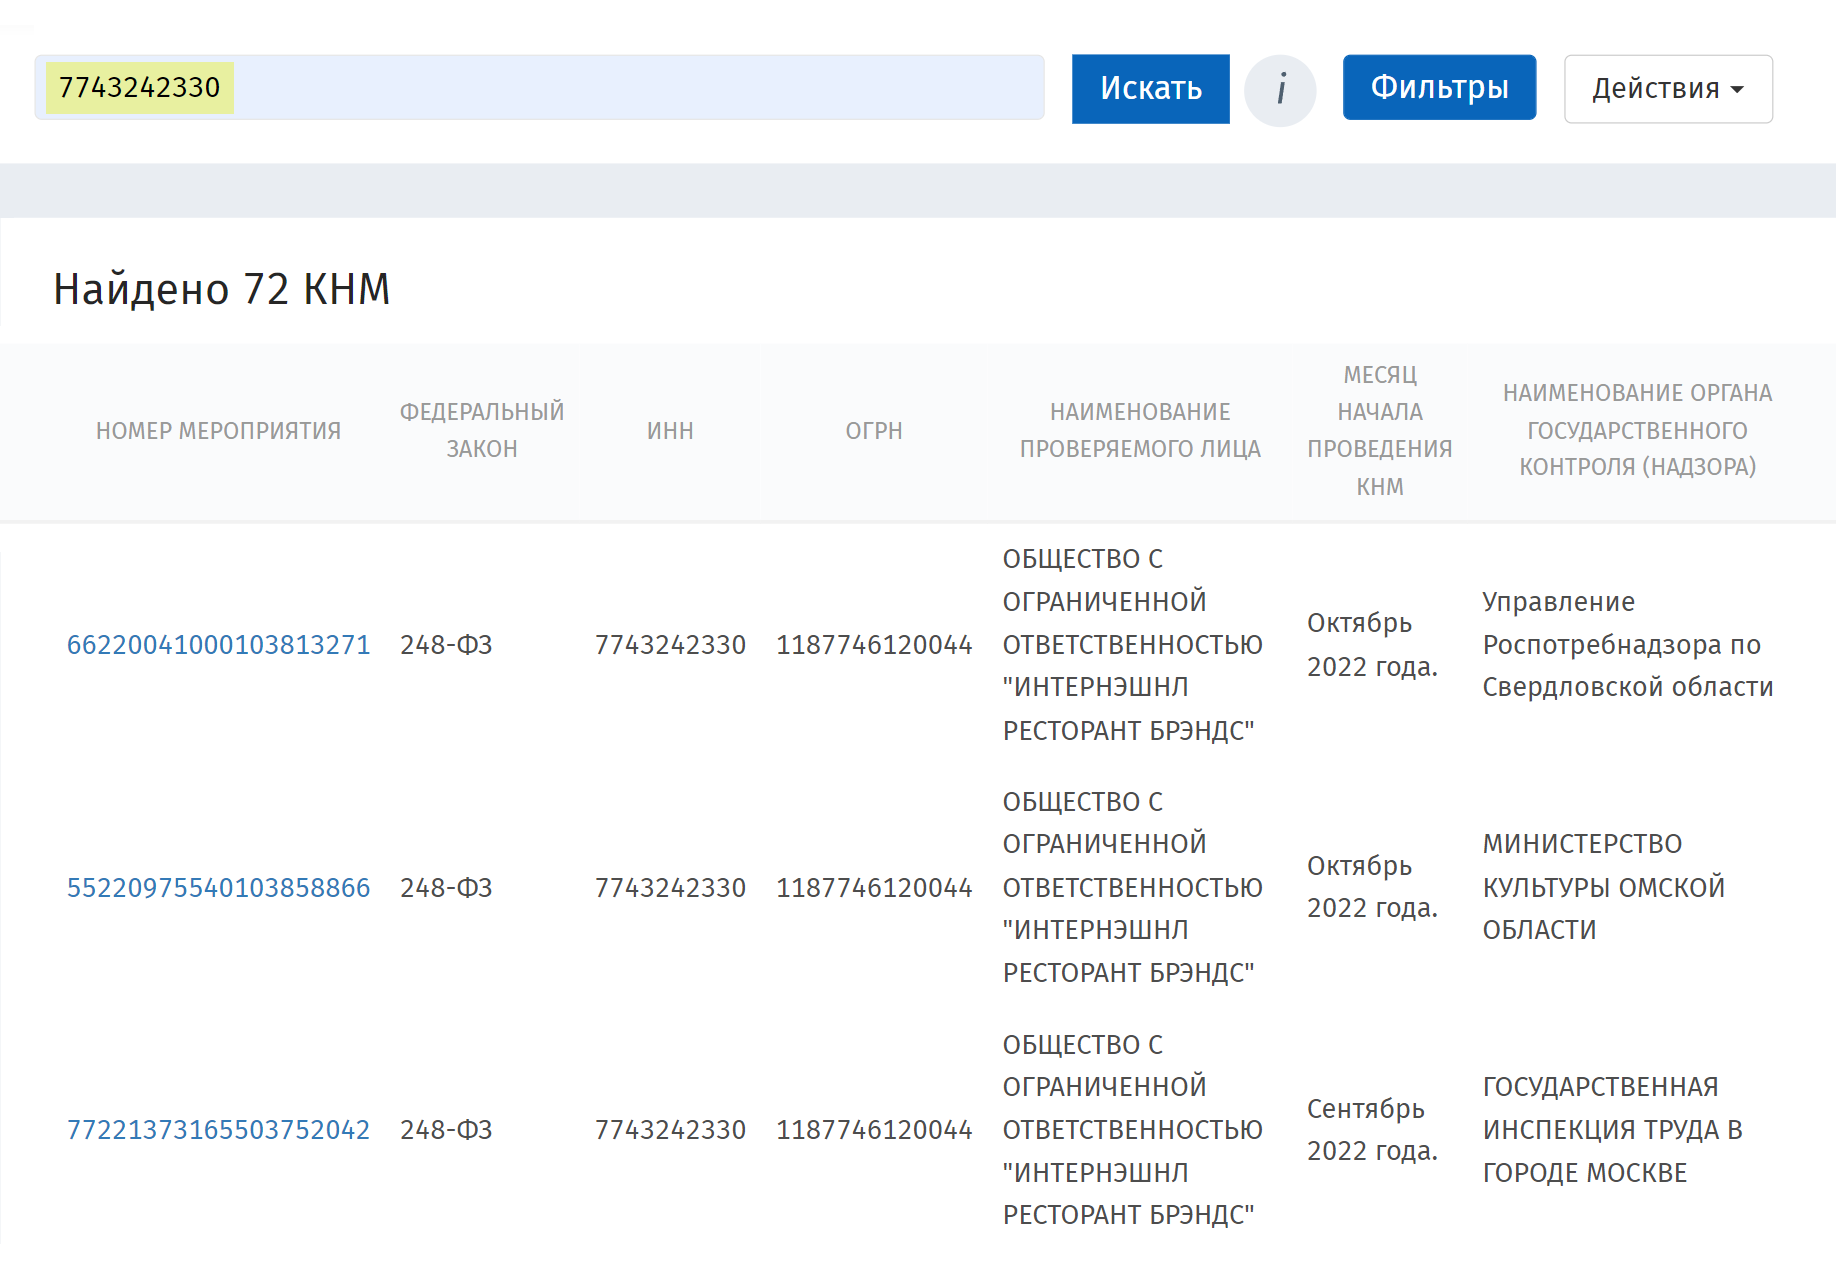 На сайте Генпрокуратуры можно узнать, какие плановые проверки будут у вашей компании в течение года. Просто введите ИНН. Источник: proverki.gov.ru